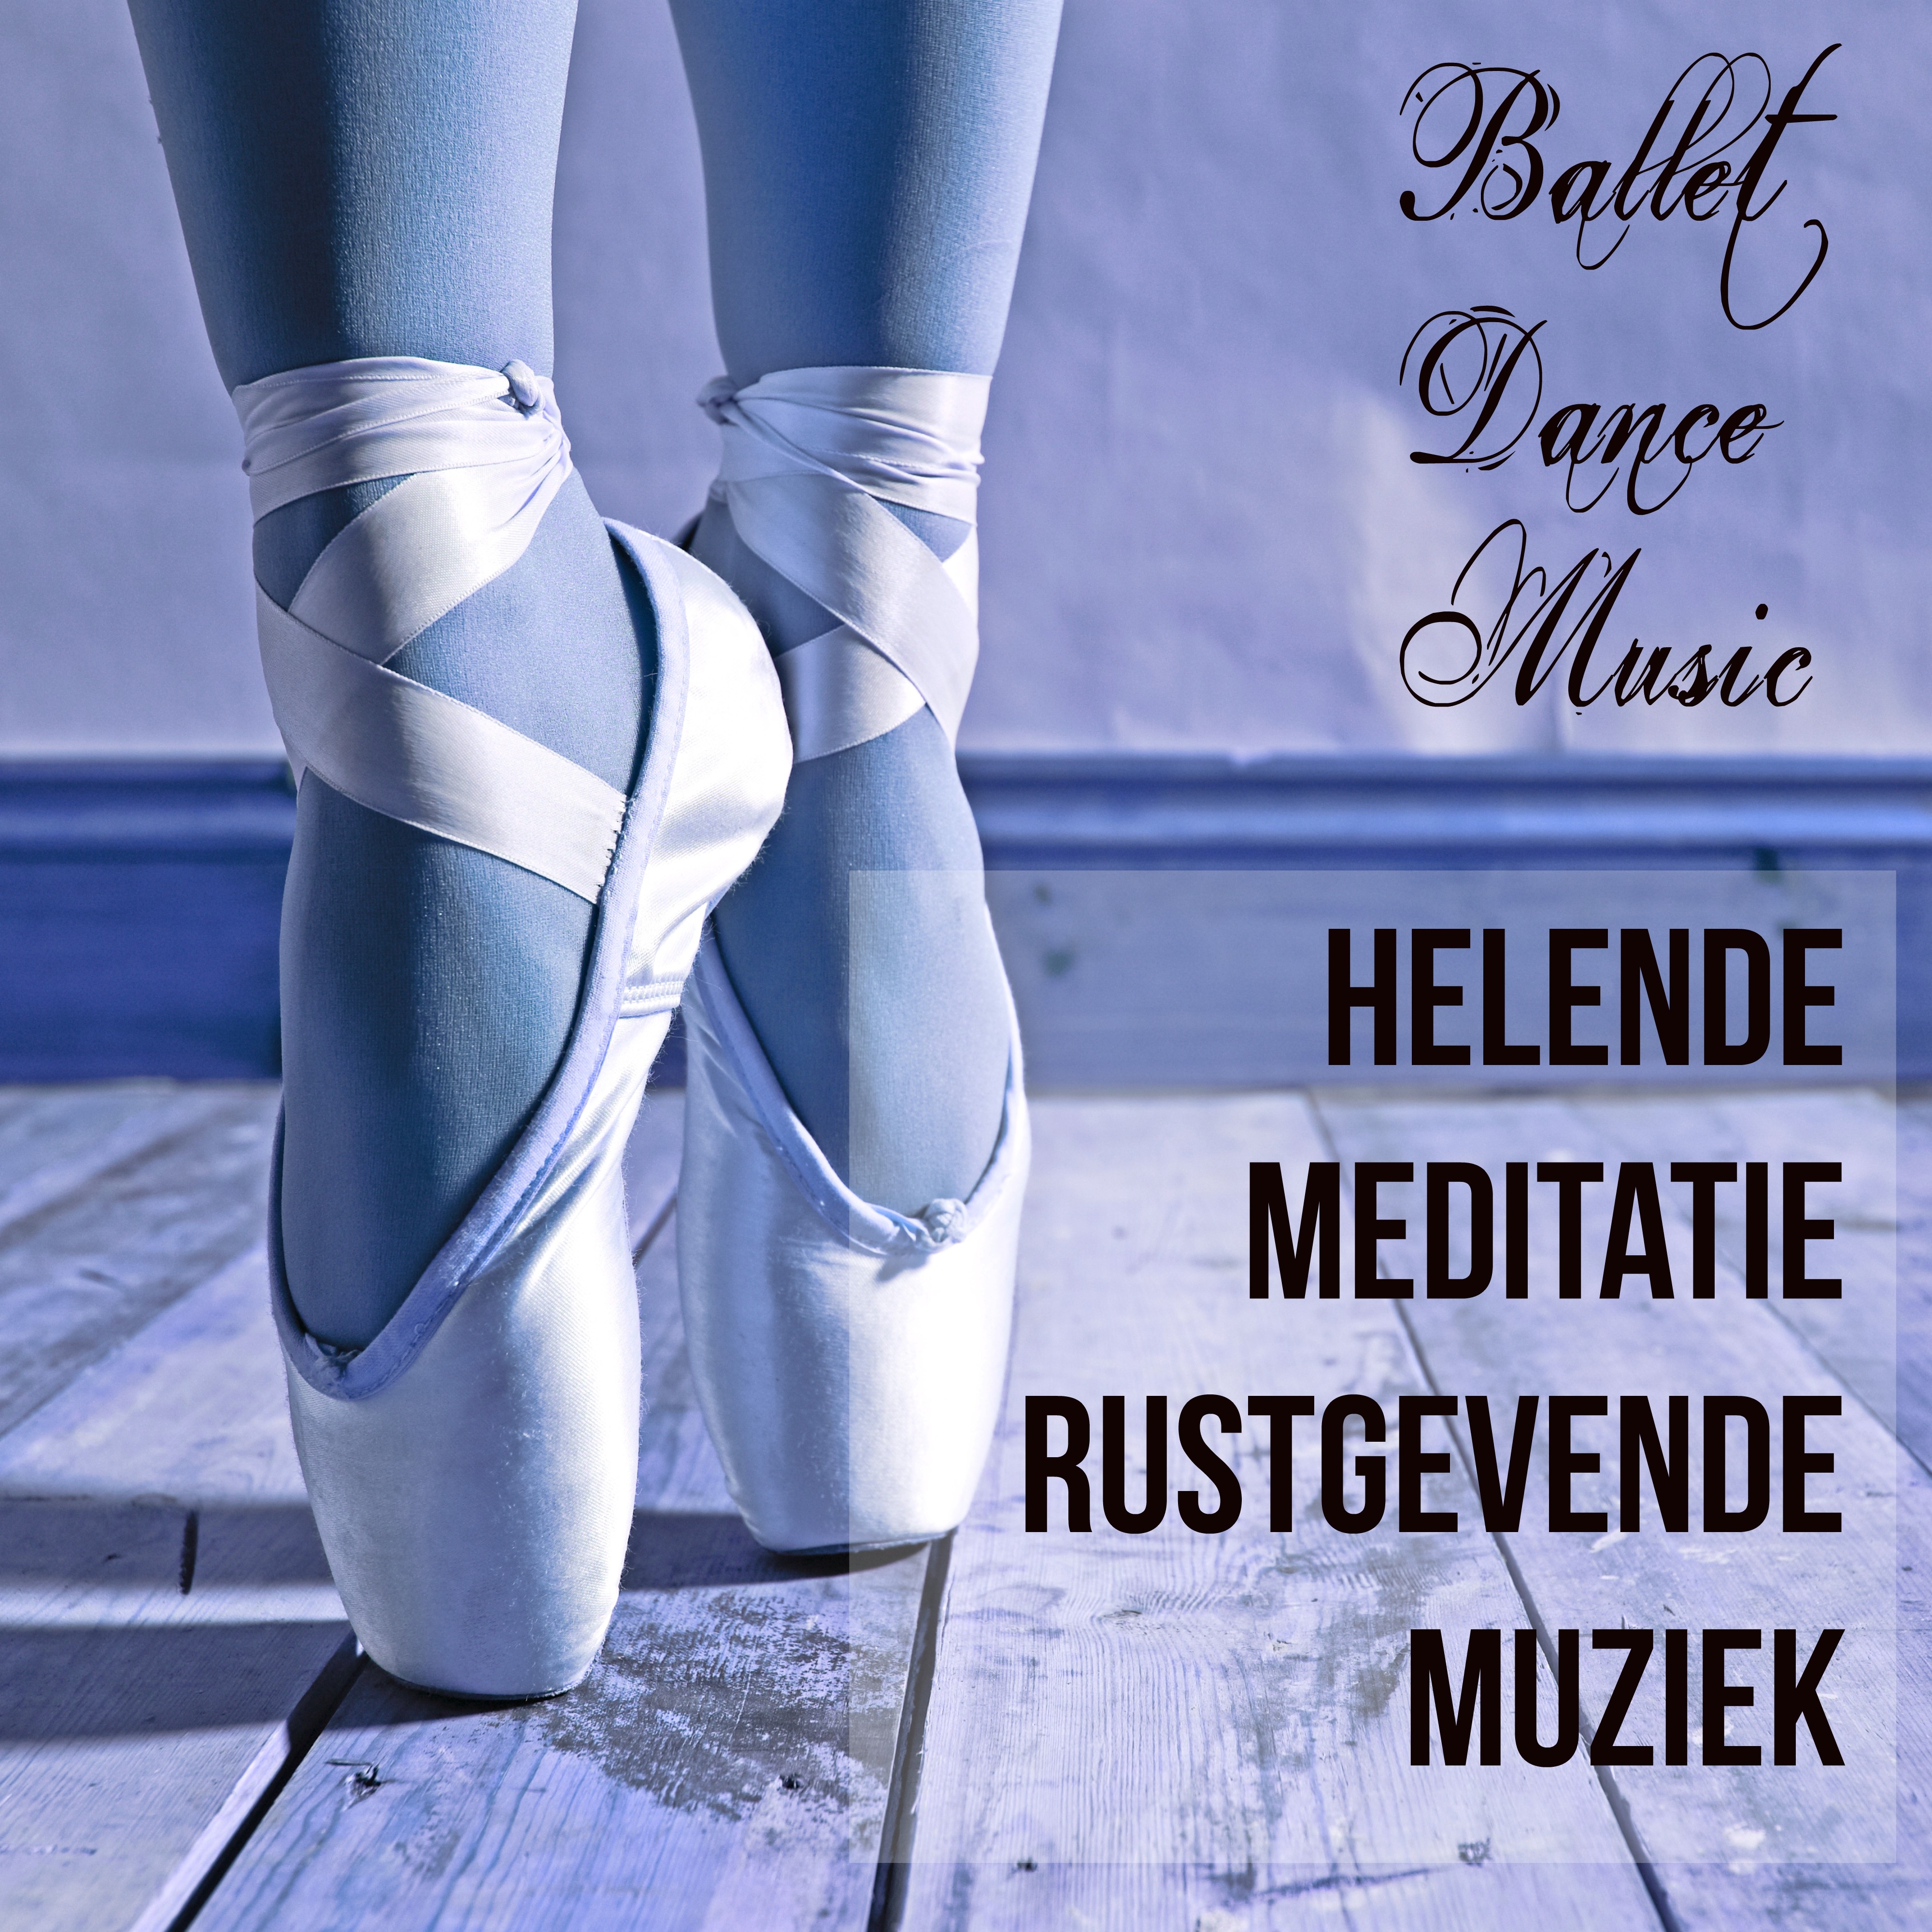 Ballet Class (Romantic Music)